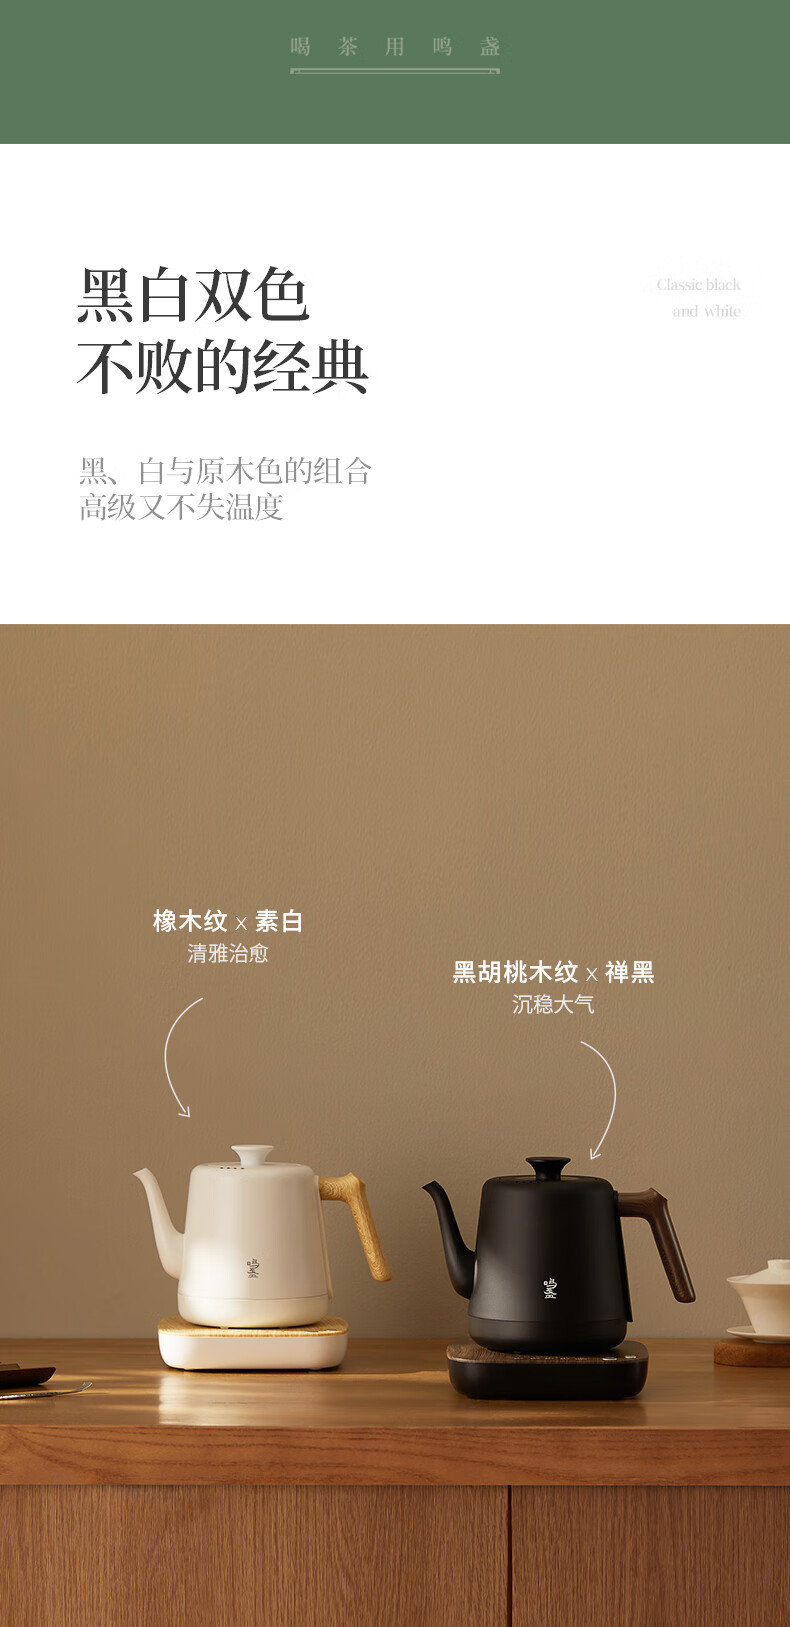 茶艺壶-1200W-790_11.jpg